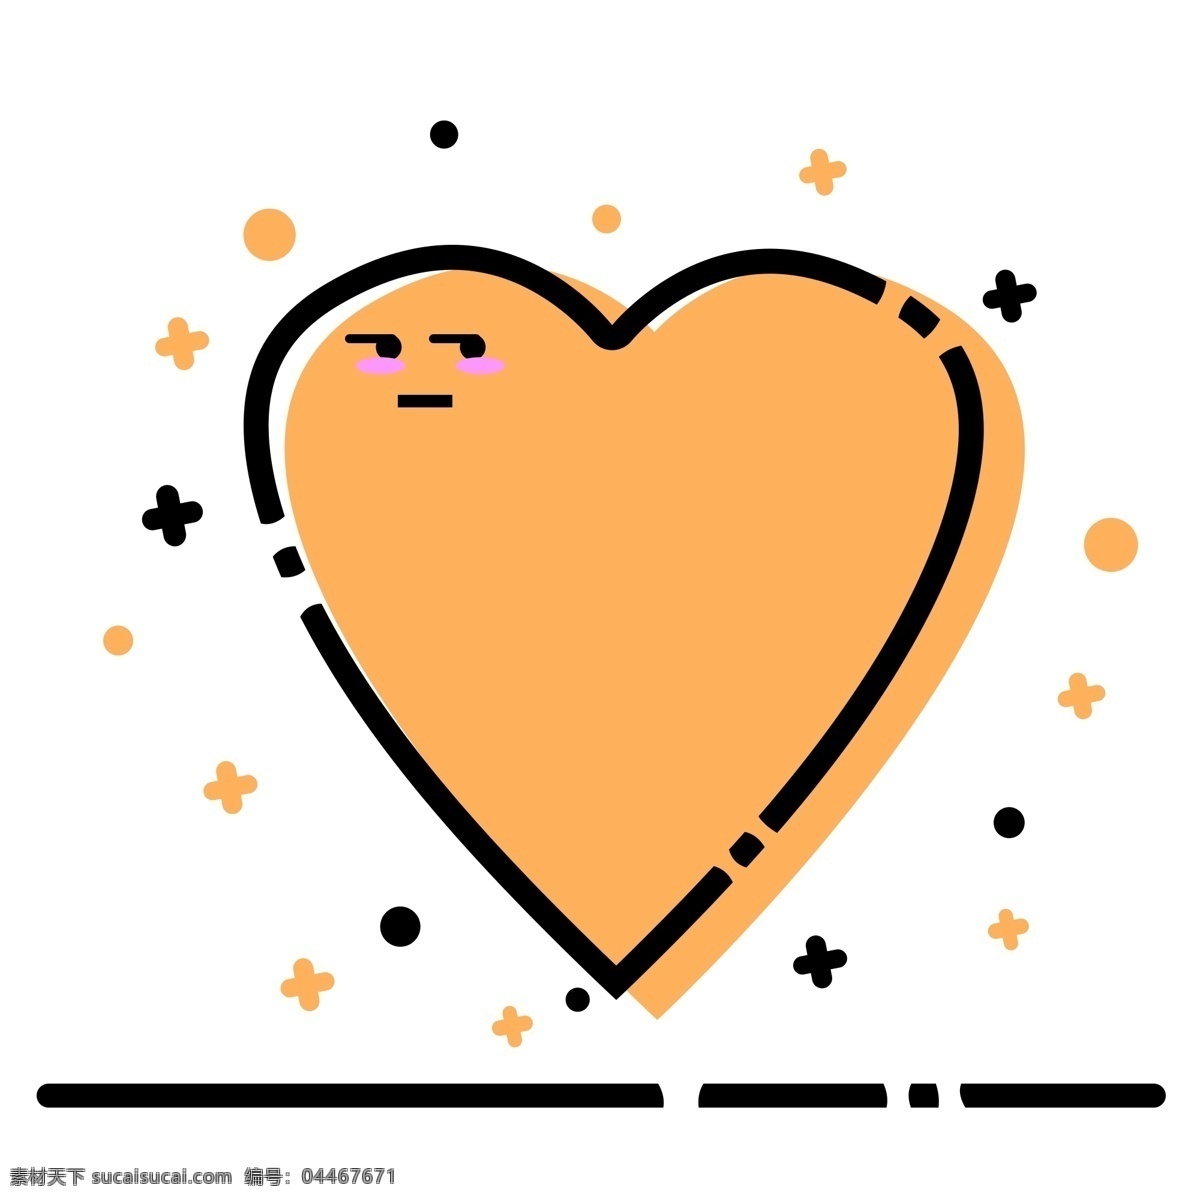 橙黄色 爱心 形状 meb 风格 纹理 边框 商用 爱心形状 纹理边框 商业 简约 meb风格 可商用 meb边框